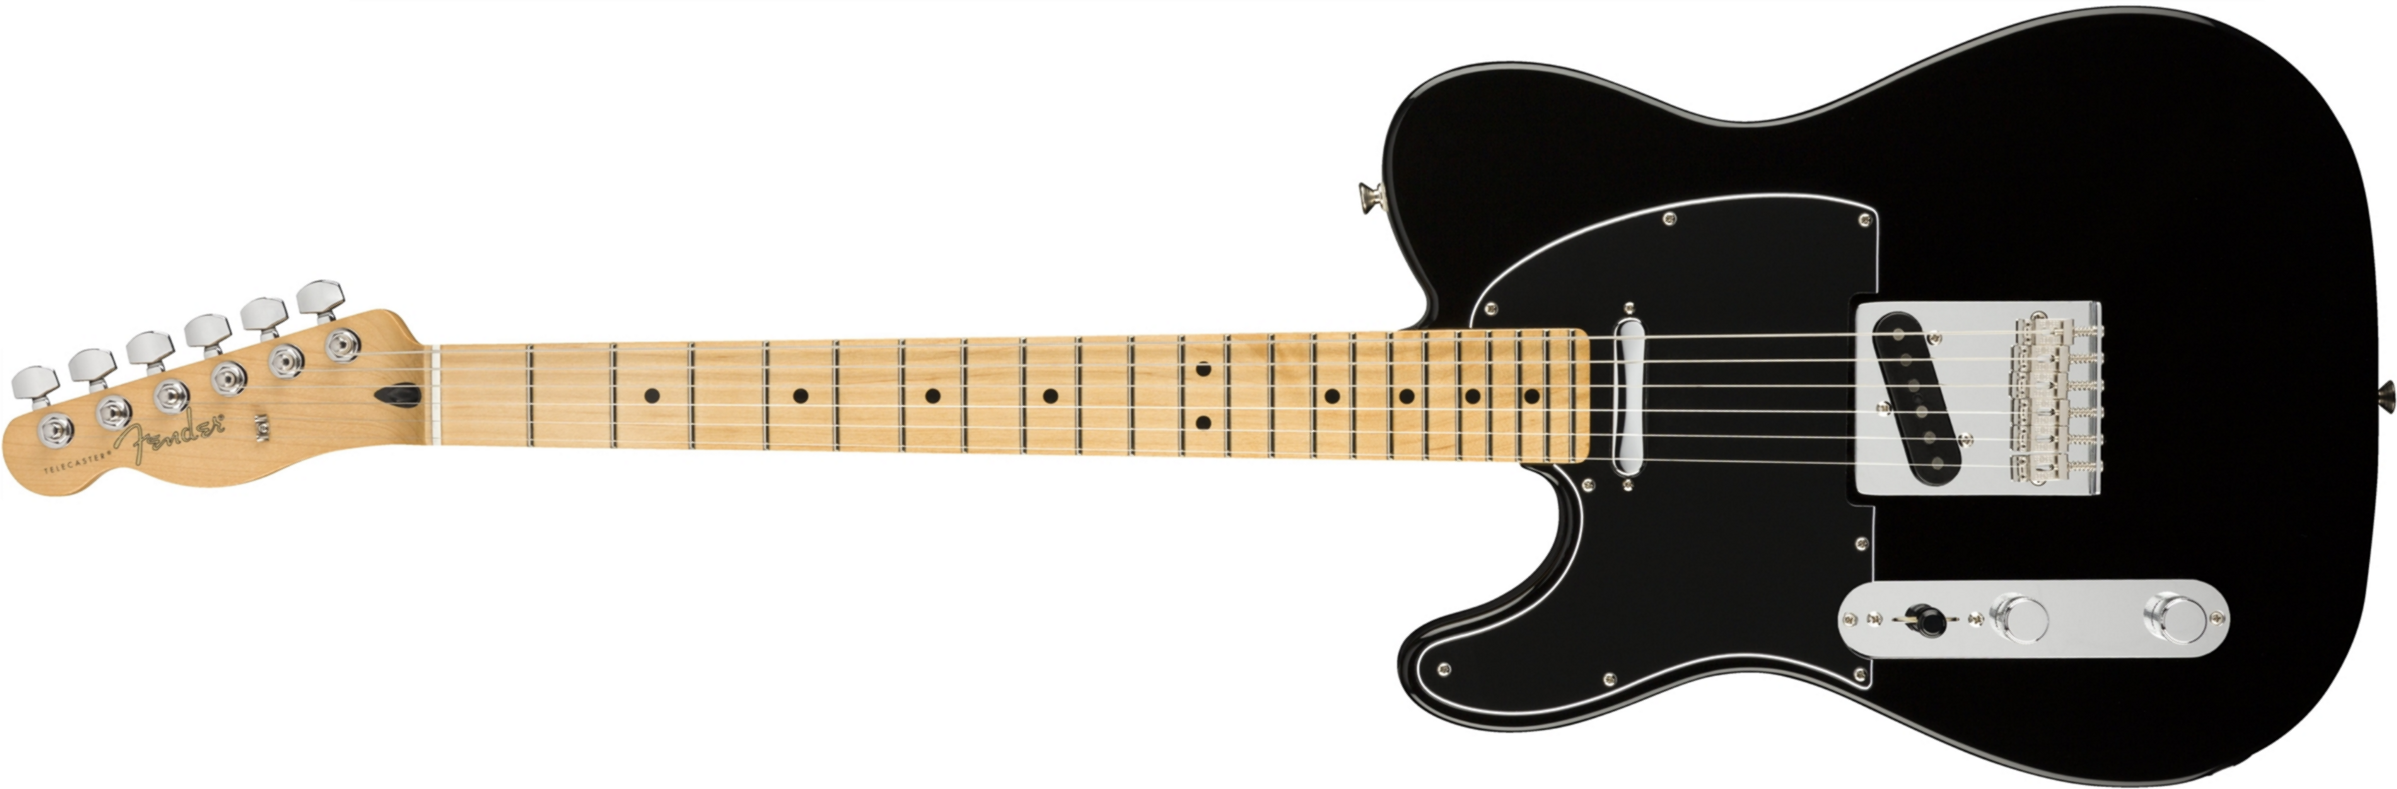 Fender Tele Player Lh Gaucher Mex Ss Mn - Black - Guitarra electrica para zurdos - Main picture